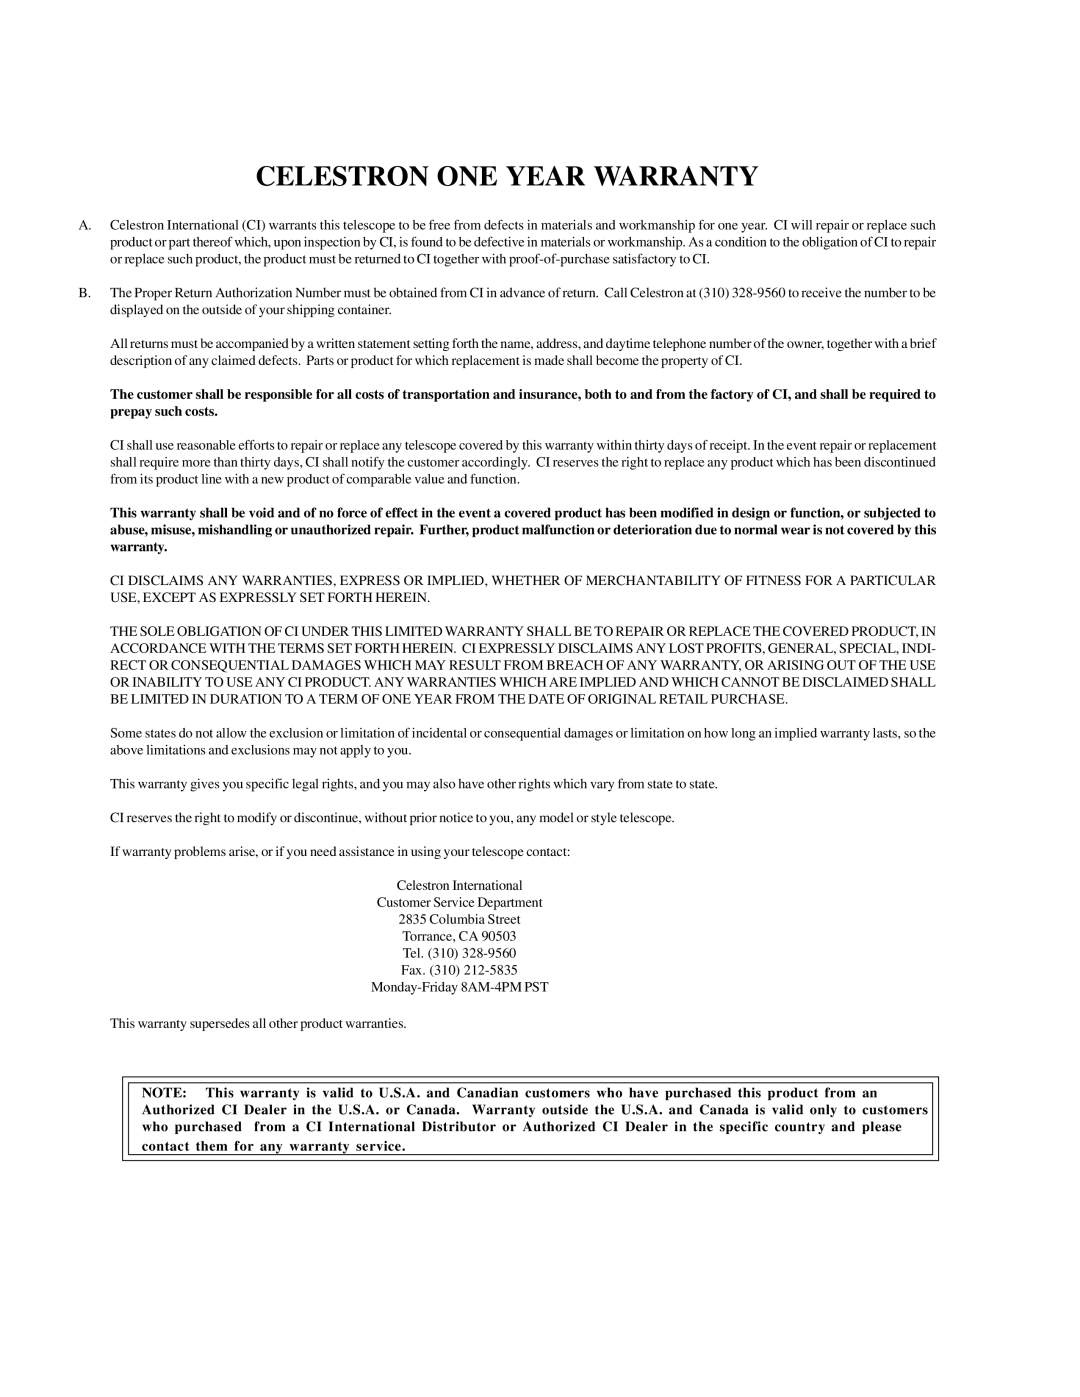 Celestron CR-150 HD instruction manual Celestron One Year Warranty 